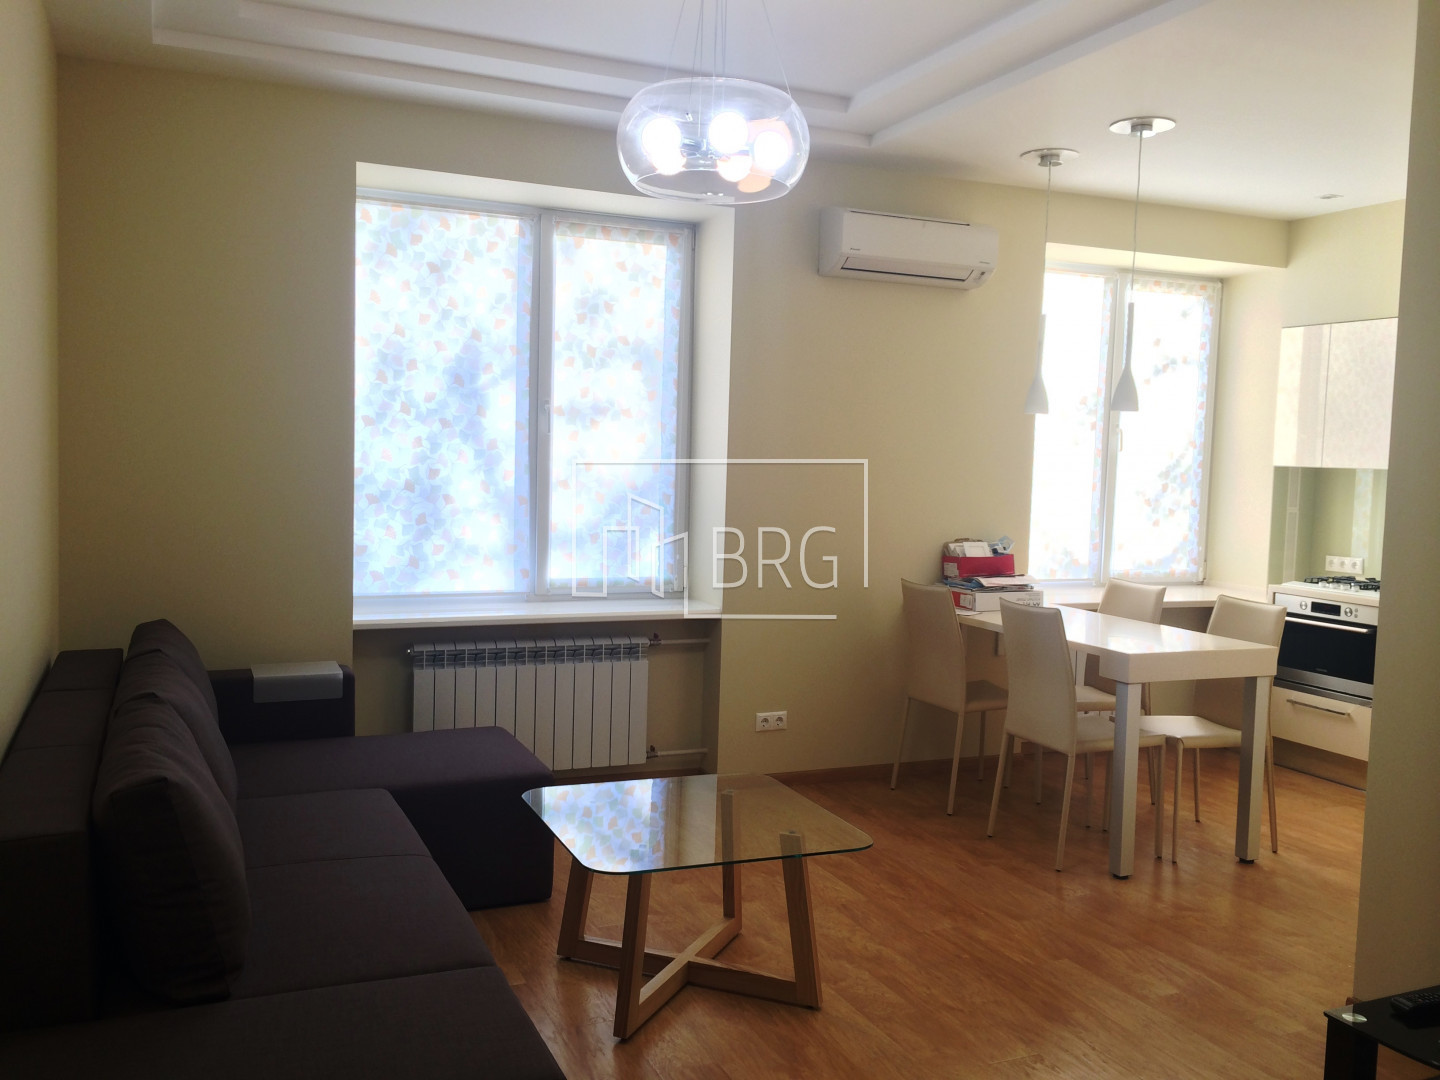 Аренда 2-х комнатной квартиры в центре на Печерске. Киев